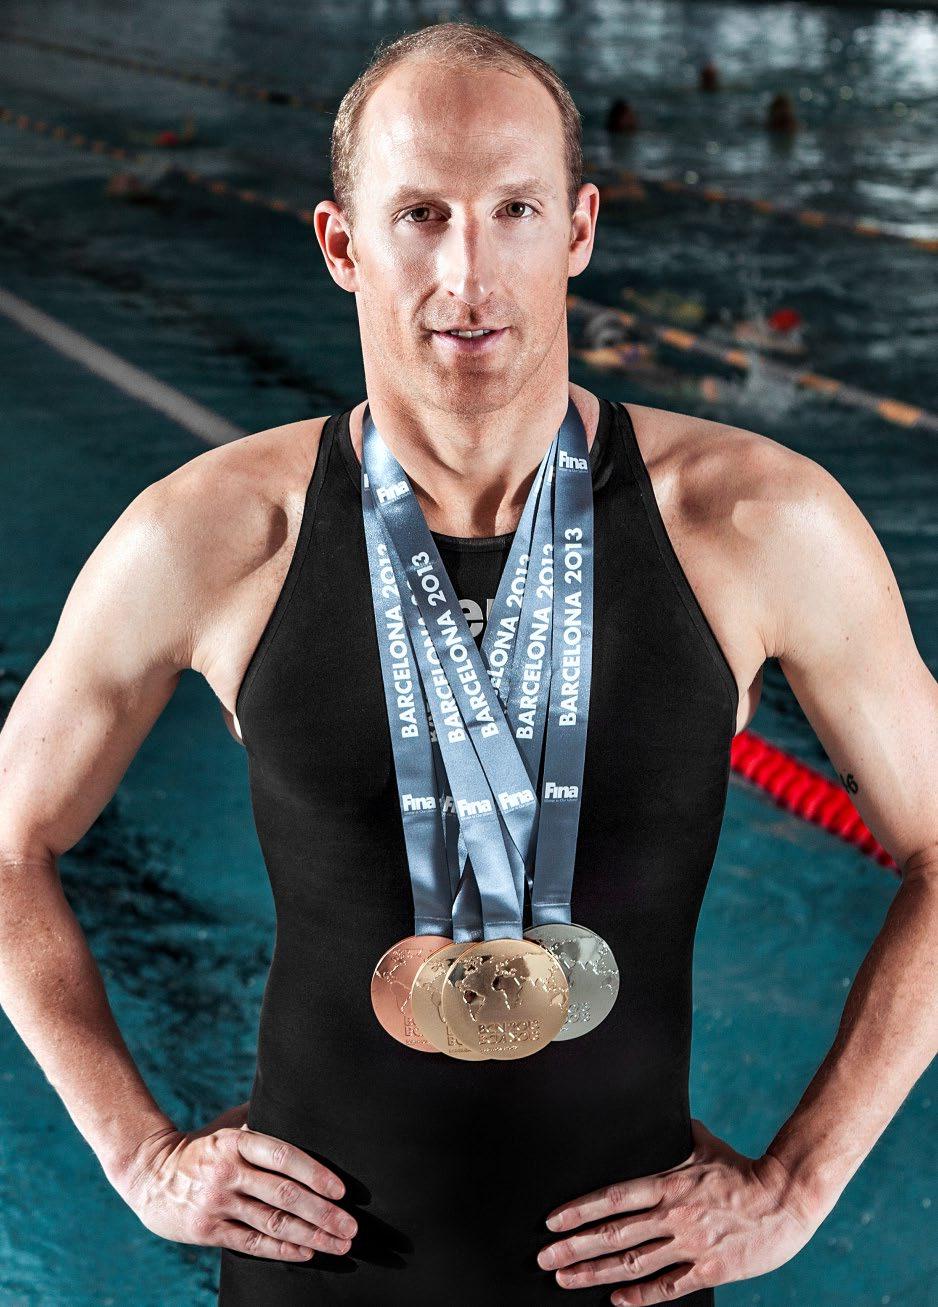 DER AUSNAHMEATHLET Mit insgesamt 12 gewonnenen Titeln bei Weltmeisterschaften im Freiwasserschwimmen ist Thomas Lurz nicht nur der erfolgreichste deutsche Schwimmer, sondern seit 2013 auch der erste